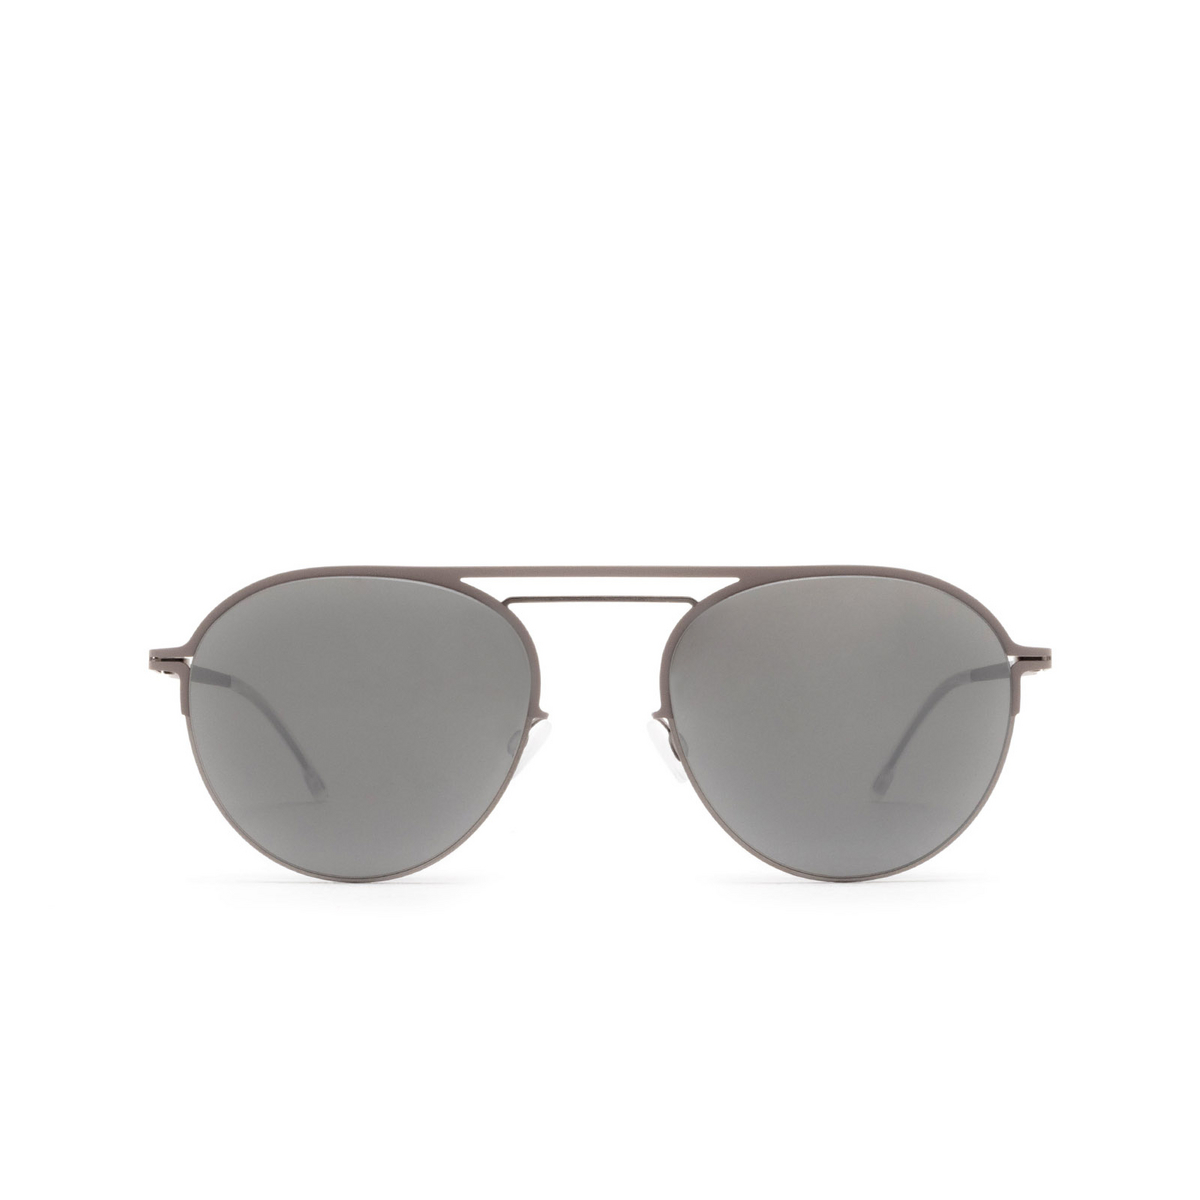 Mykita DUANE SUN Sunglasses 235 Shiny Graphite/Mole Grey - front view